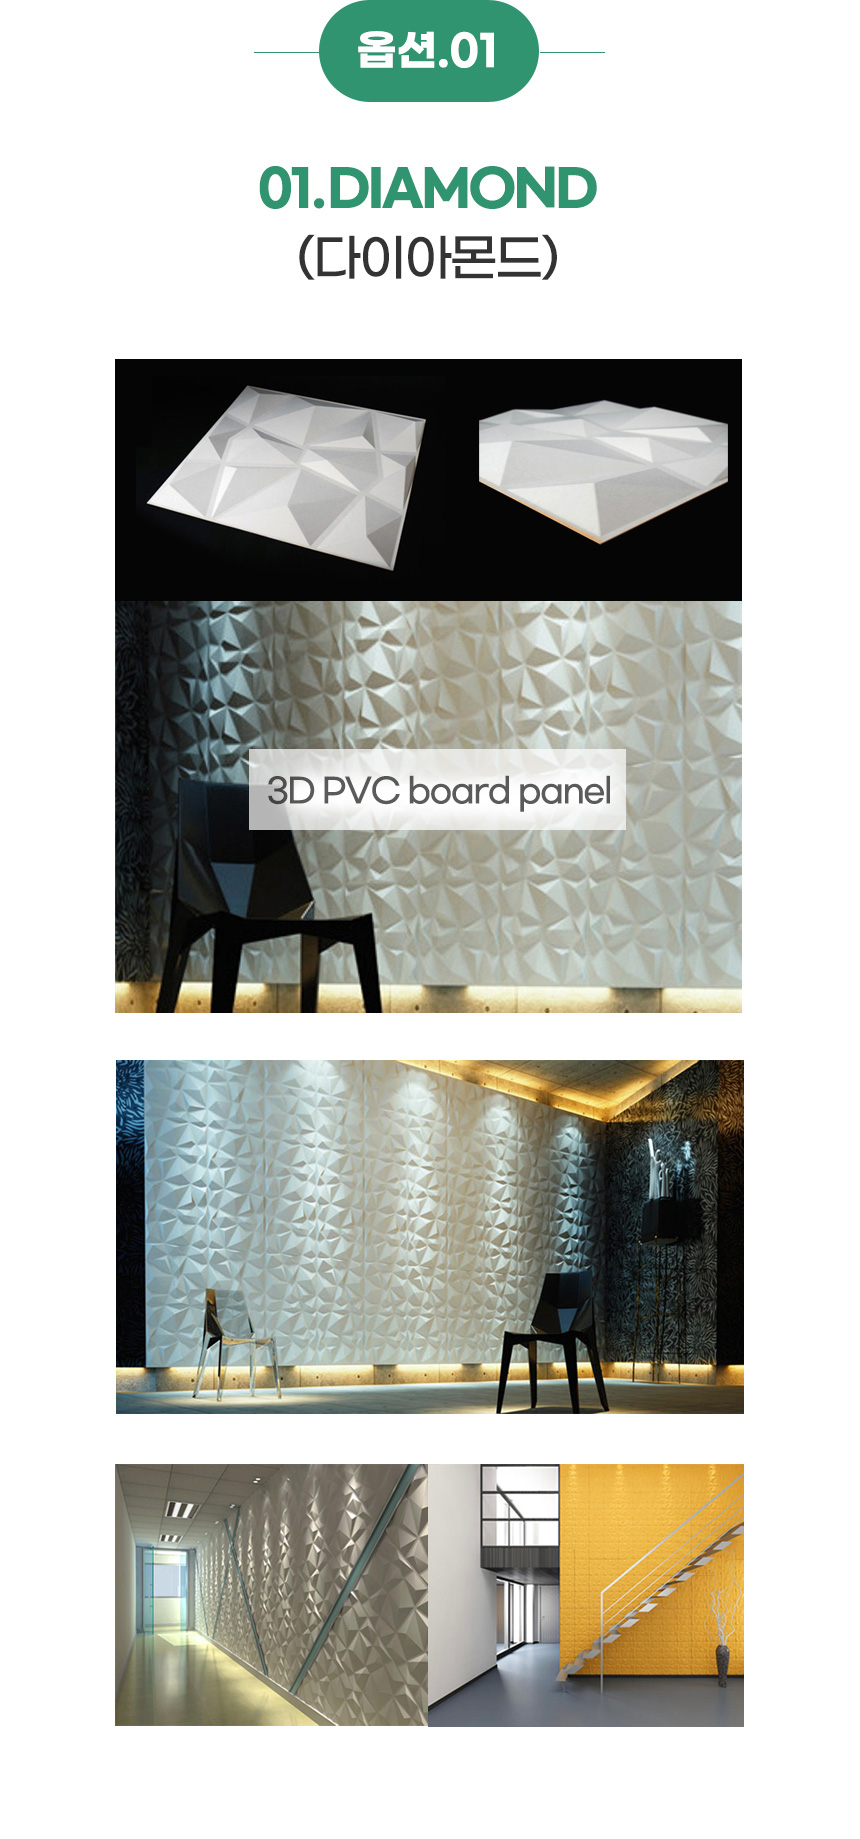 입체 벽장식 3D PVC 보드 패널 ARYL(1개당) 4,900원 - 뉴굿 인테리어, 월데코/벽지/장식, 장식/부자재, 벽장식 바보사랑 입체 벽장식 3D PVC 보드 패널 ARYL(1개당) 4,900원 - 뉴굿 인테리어, 월데코/벽지/장식, 장식/부자재, 벽장식 바보사랑